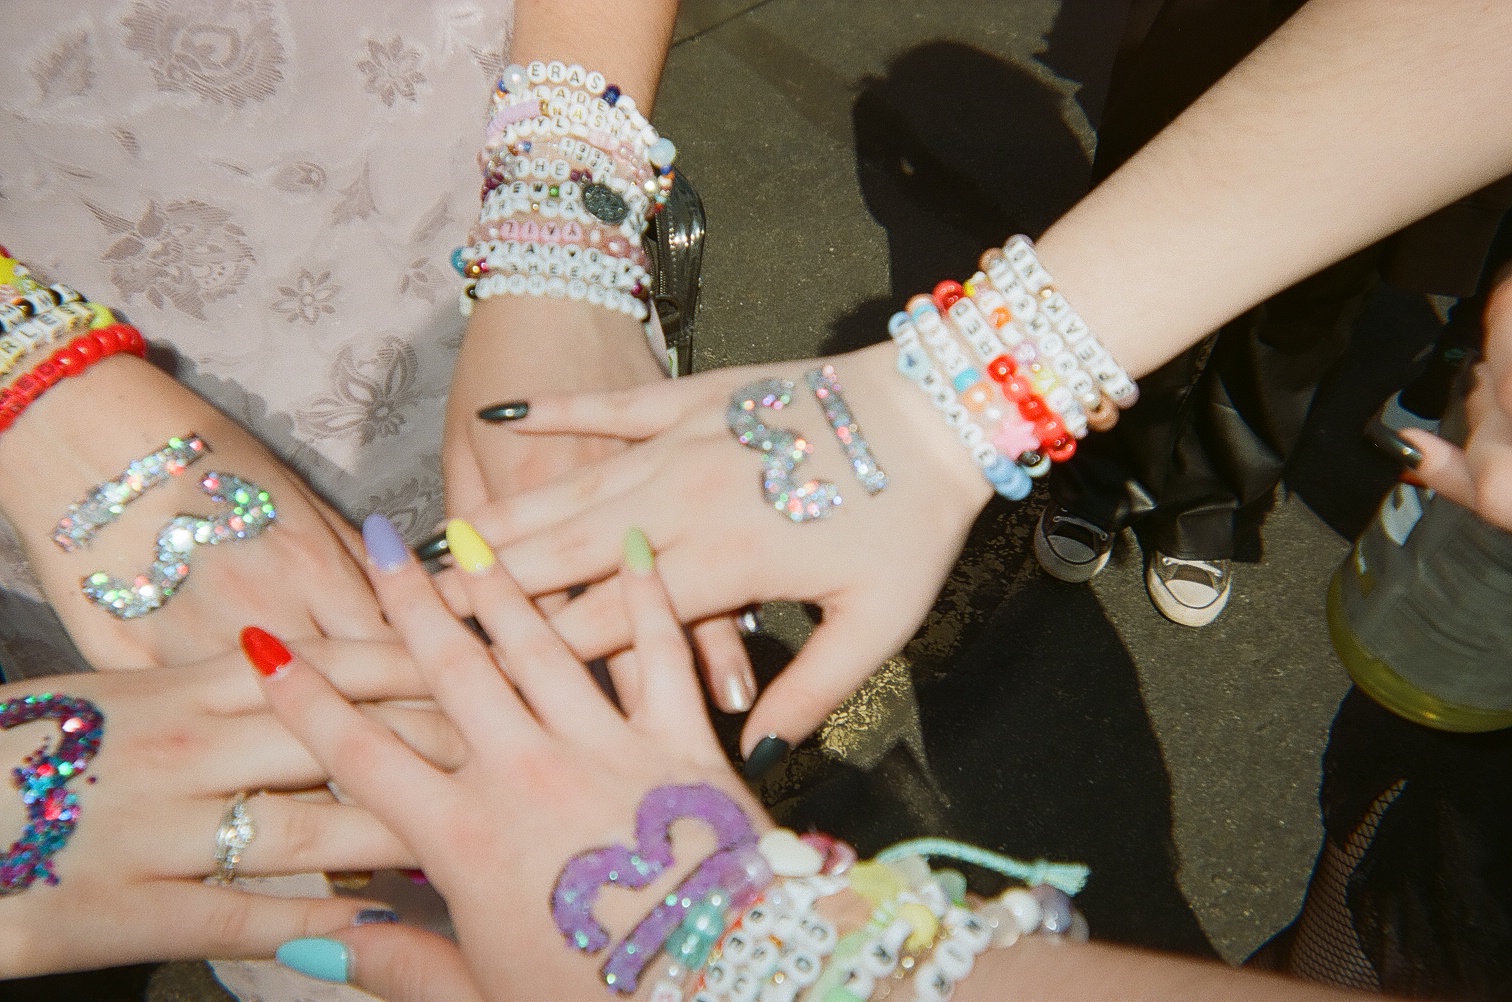 Taylor Swift Eras Tour Friendship Bracelets No Letters / No Hearts / Silver